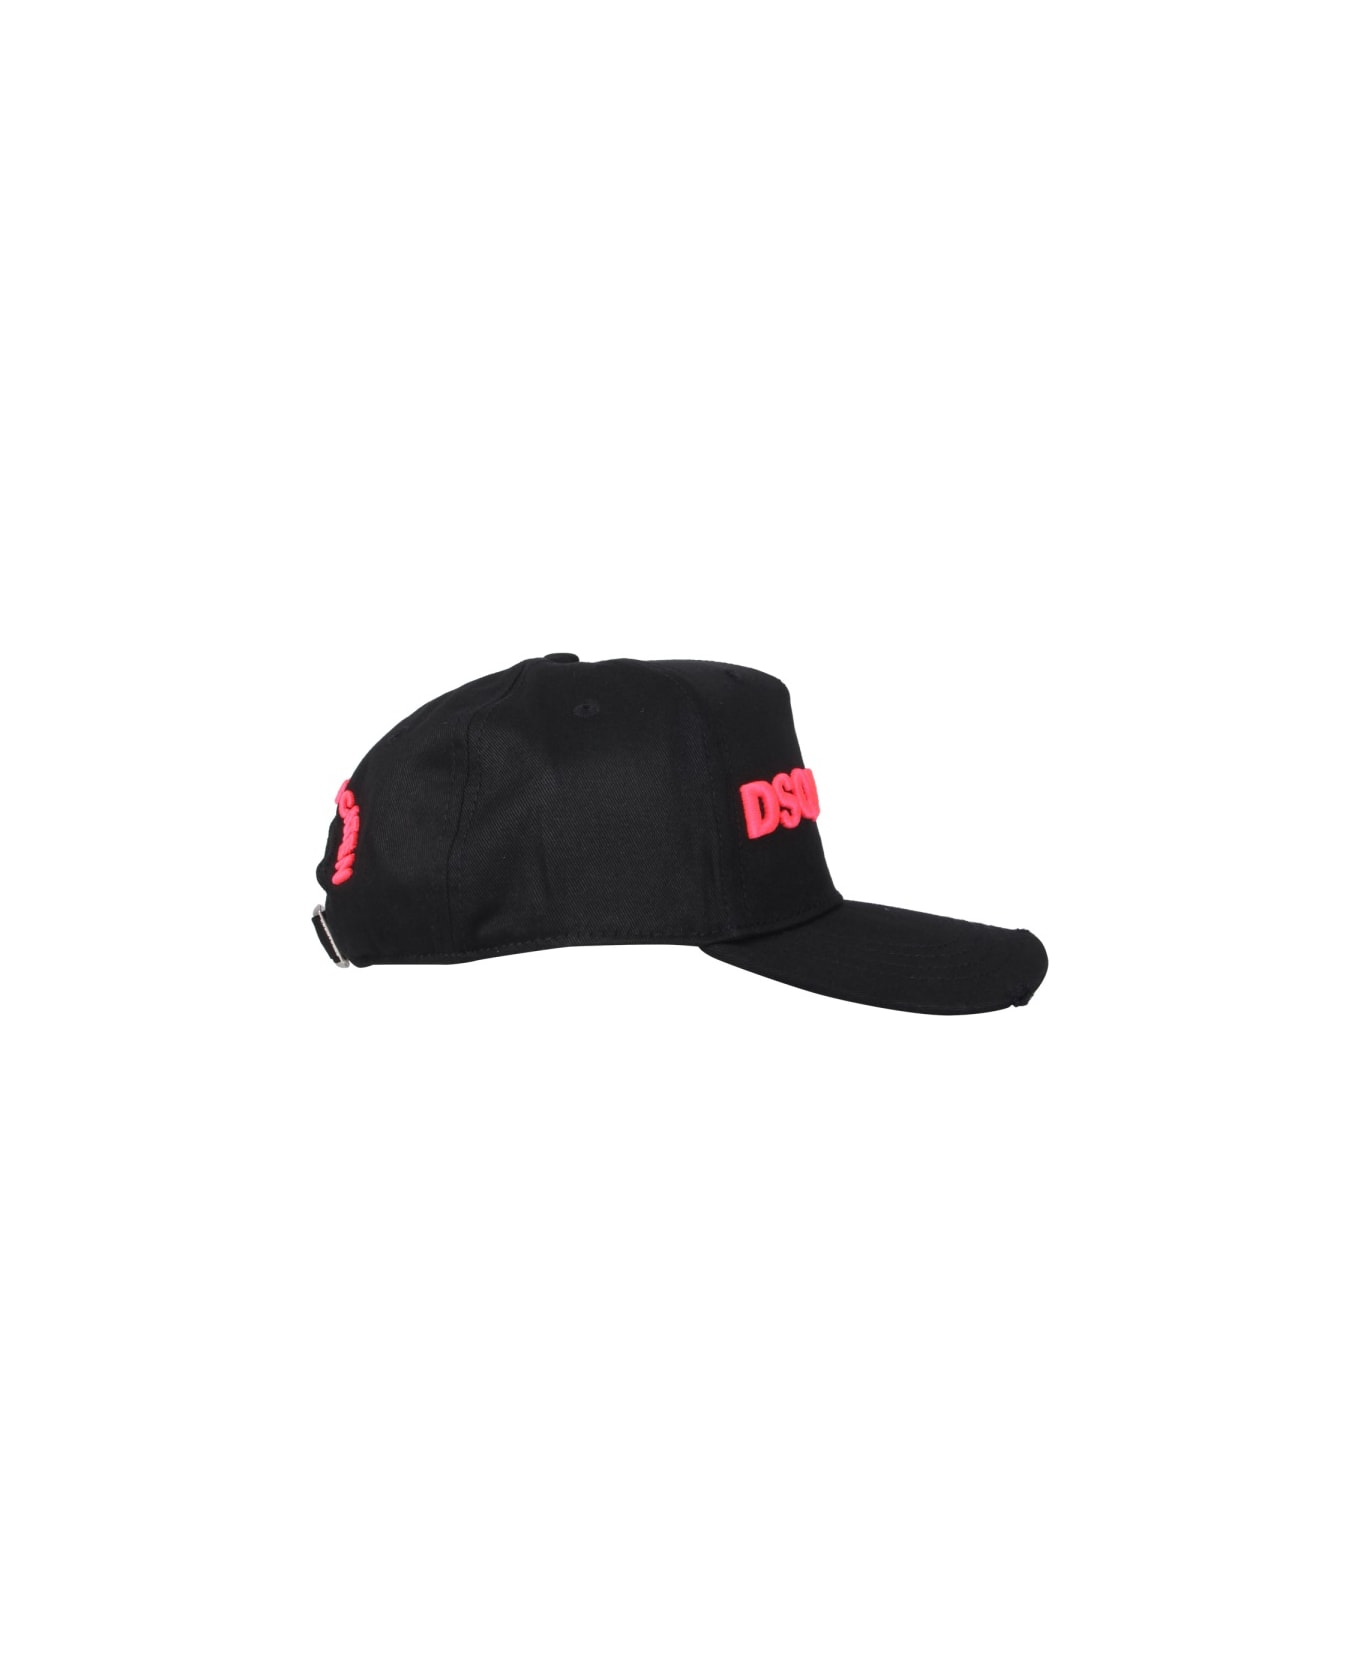 Dsquared2 Baseball Cap - BLACK